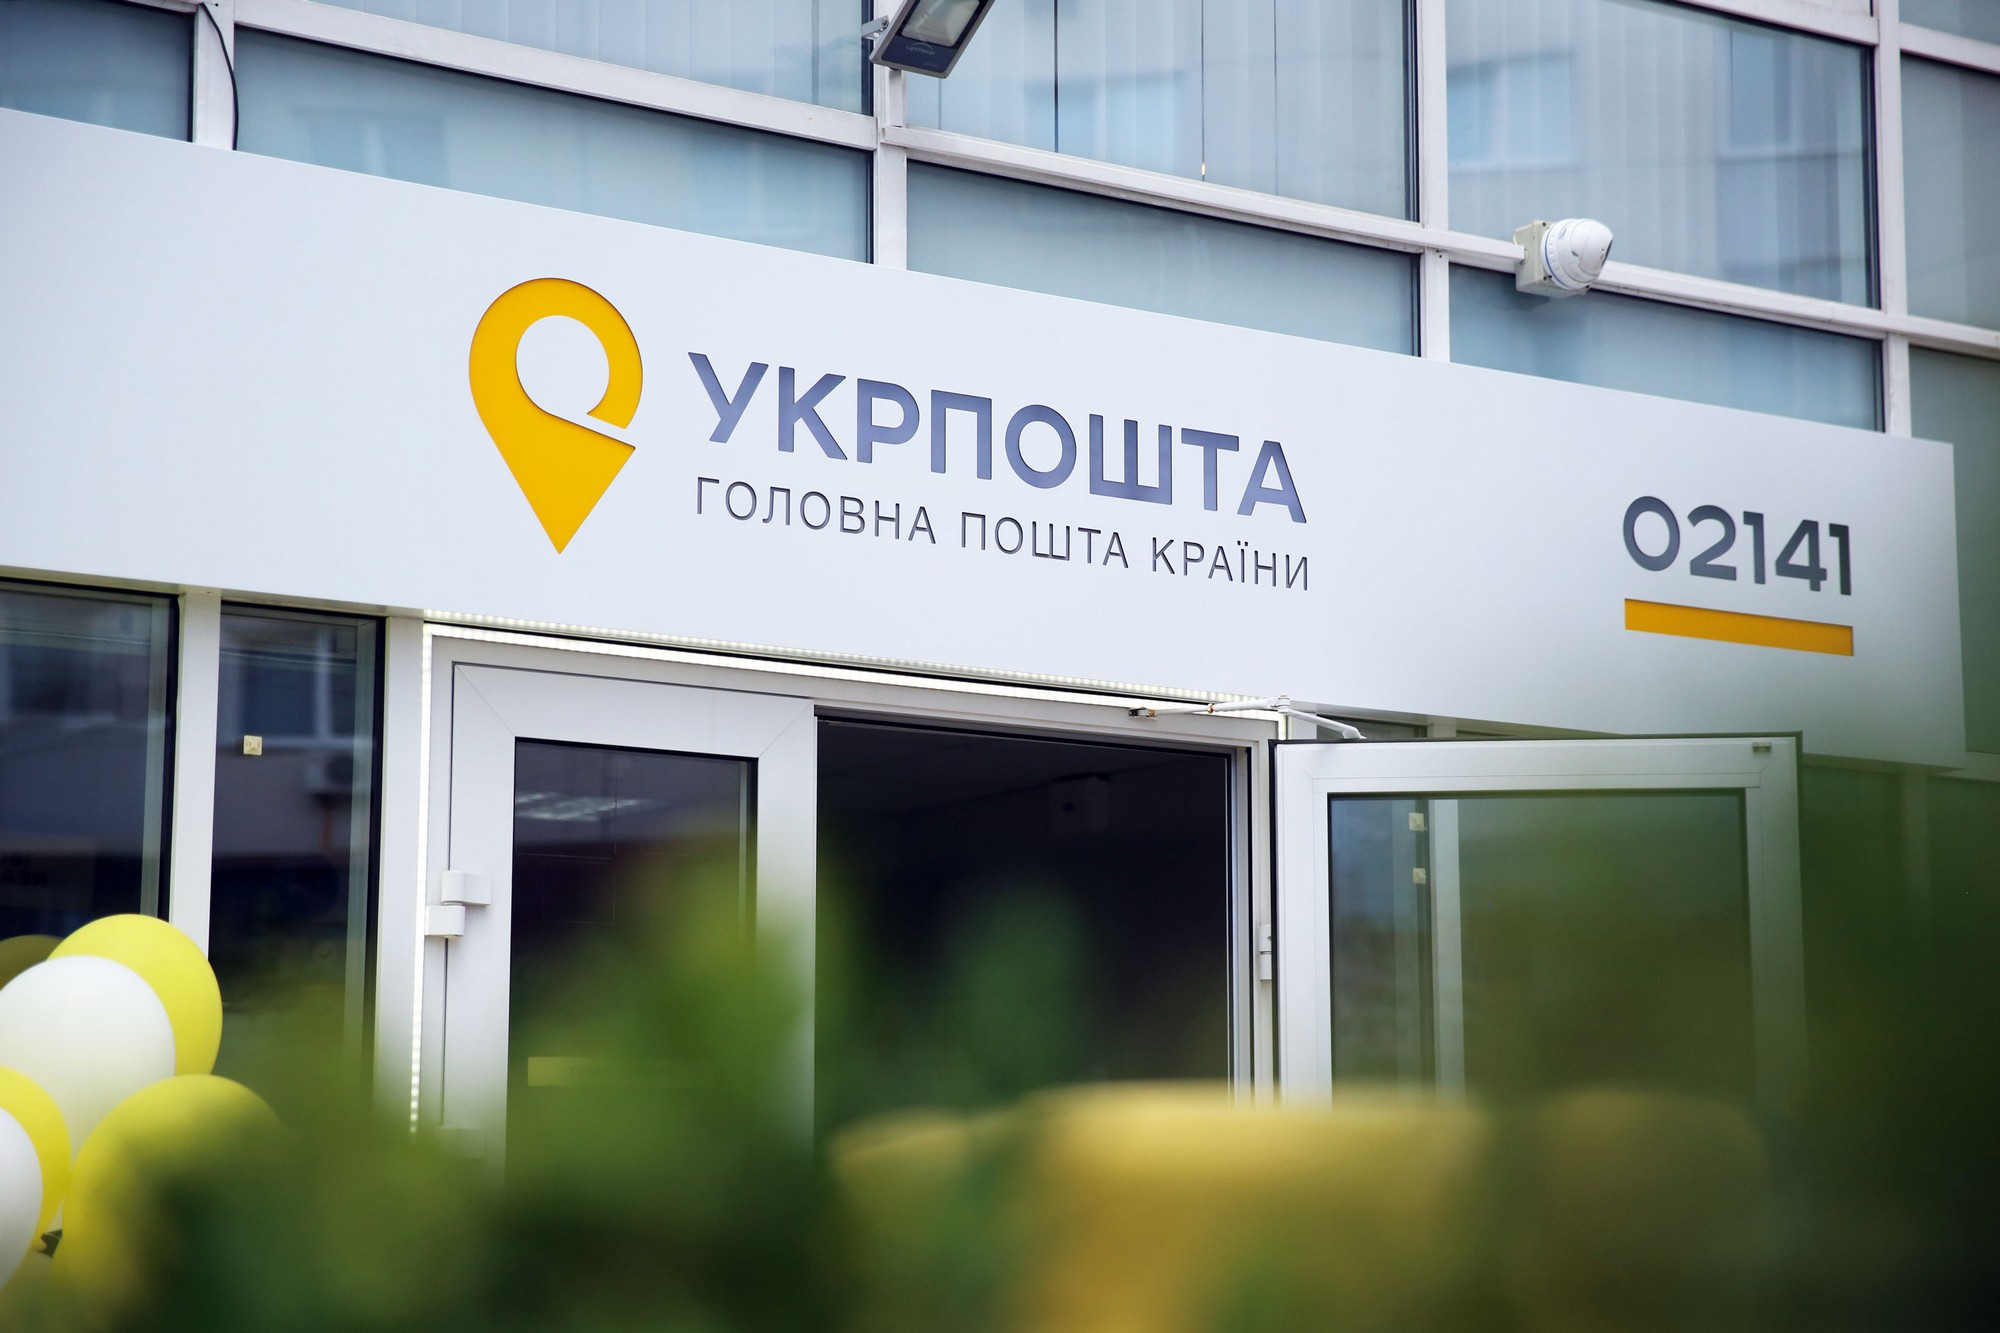 В Україні запрацювала нова схема обману через OLX та Укрпошту